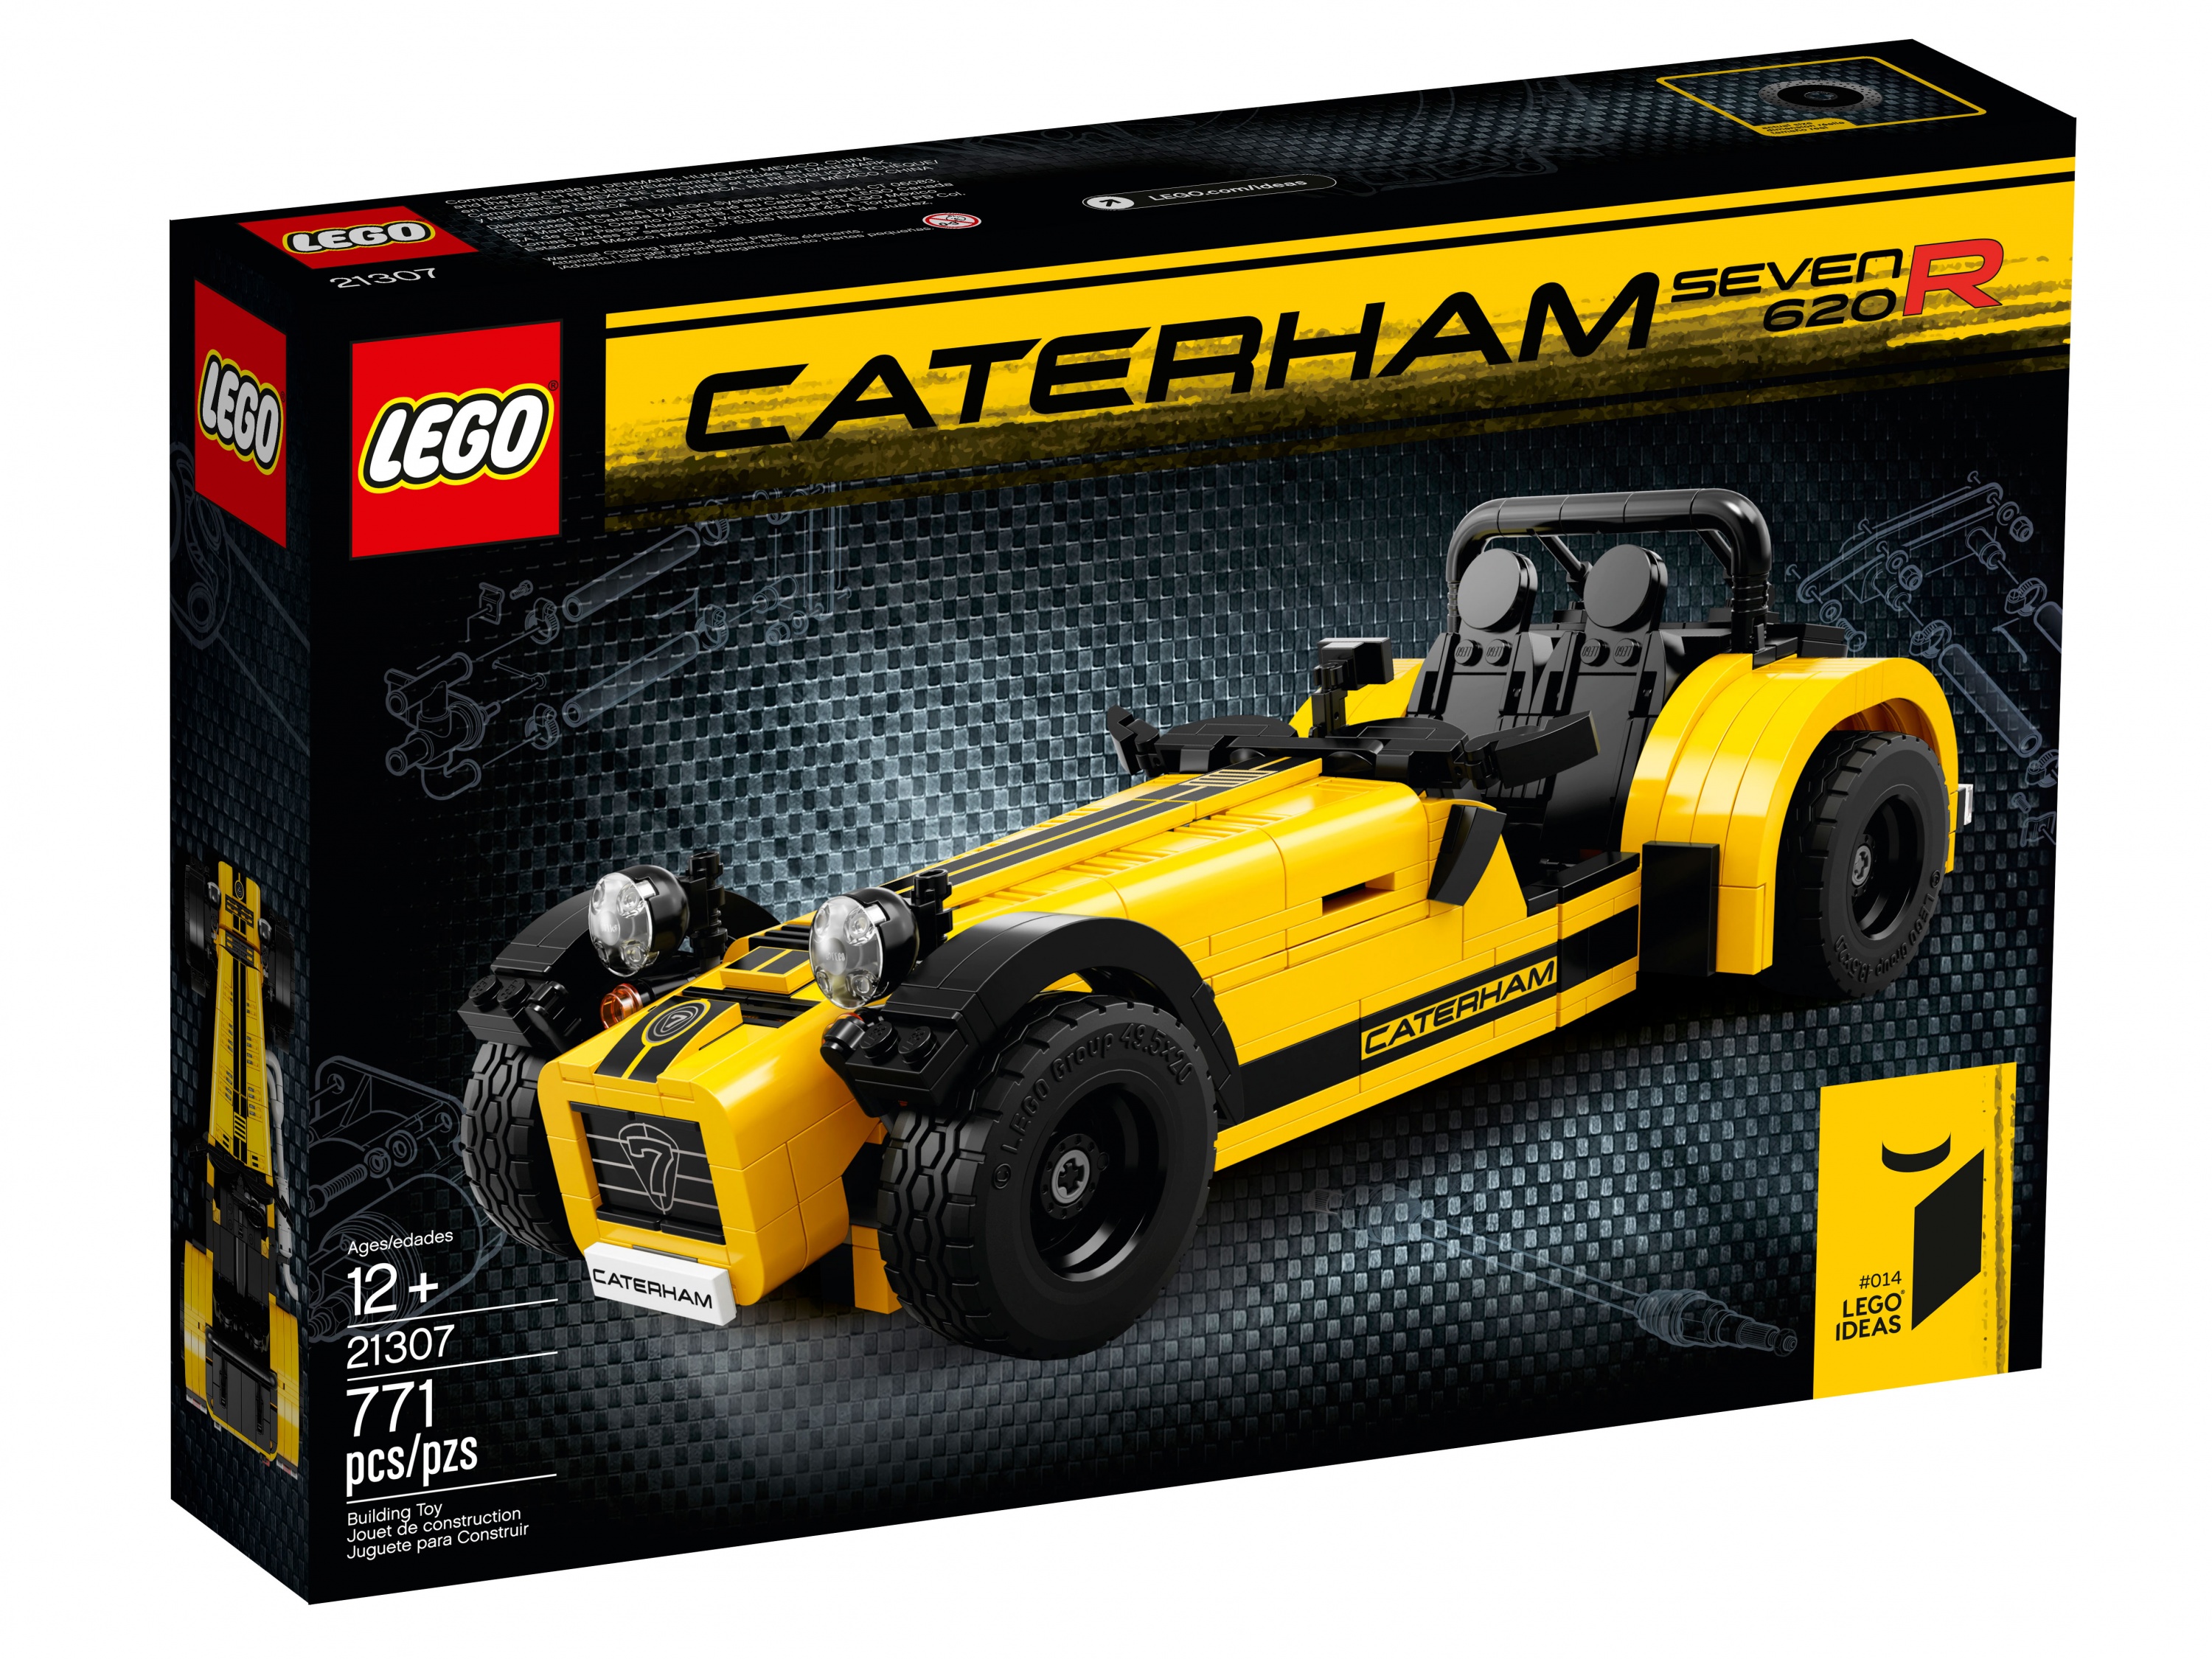 Lego Cuusoo 21307 Caterham Seven 620R